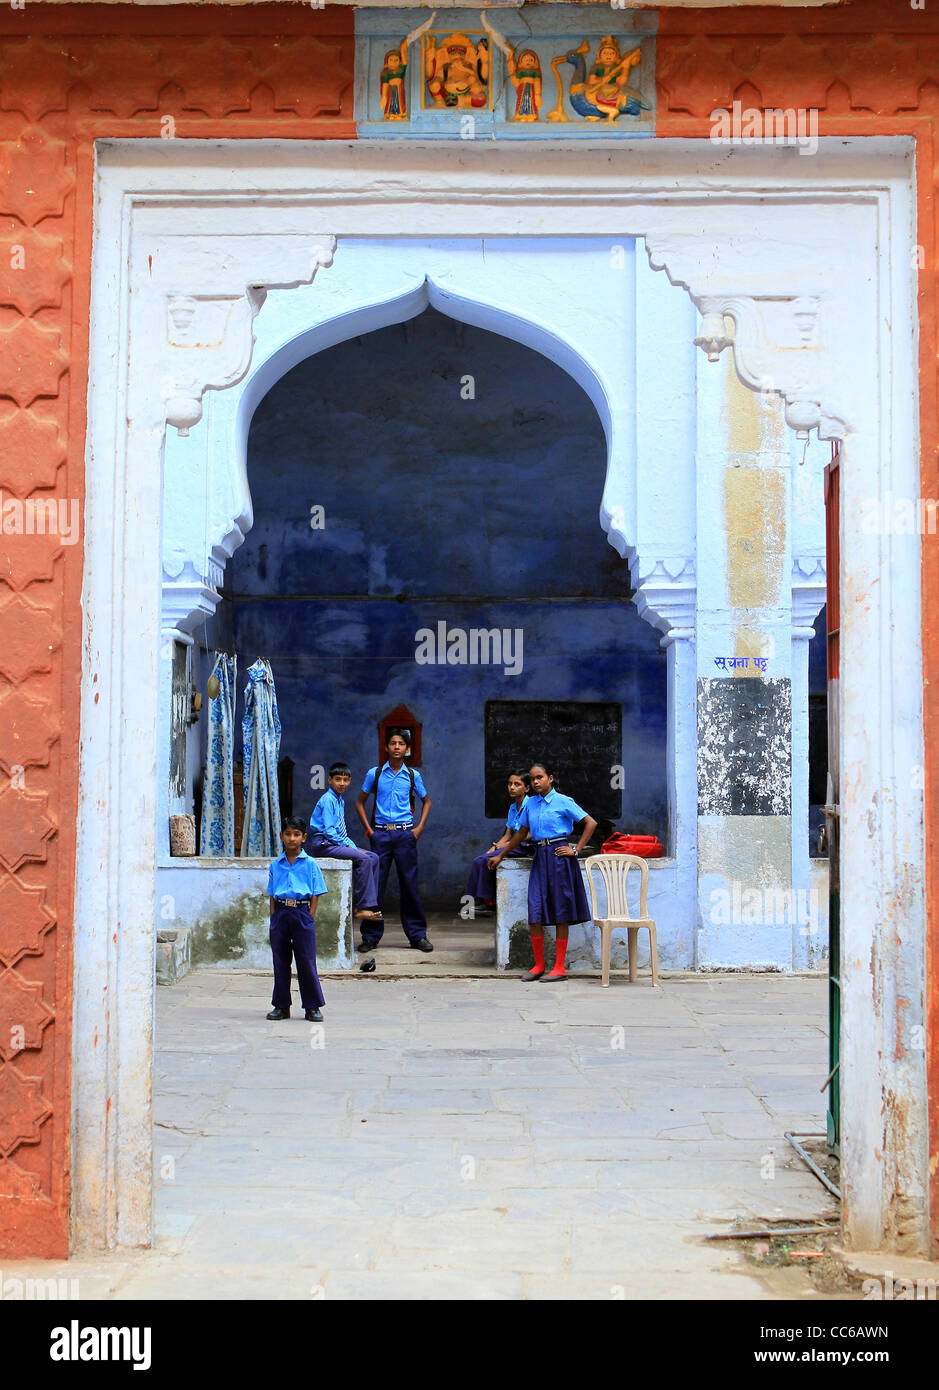 Schoolchildren under a blue archway . Bundi. Rajasthan. India Stock Photo